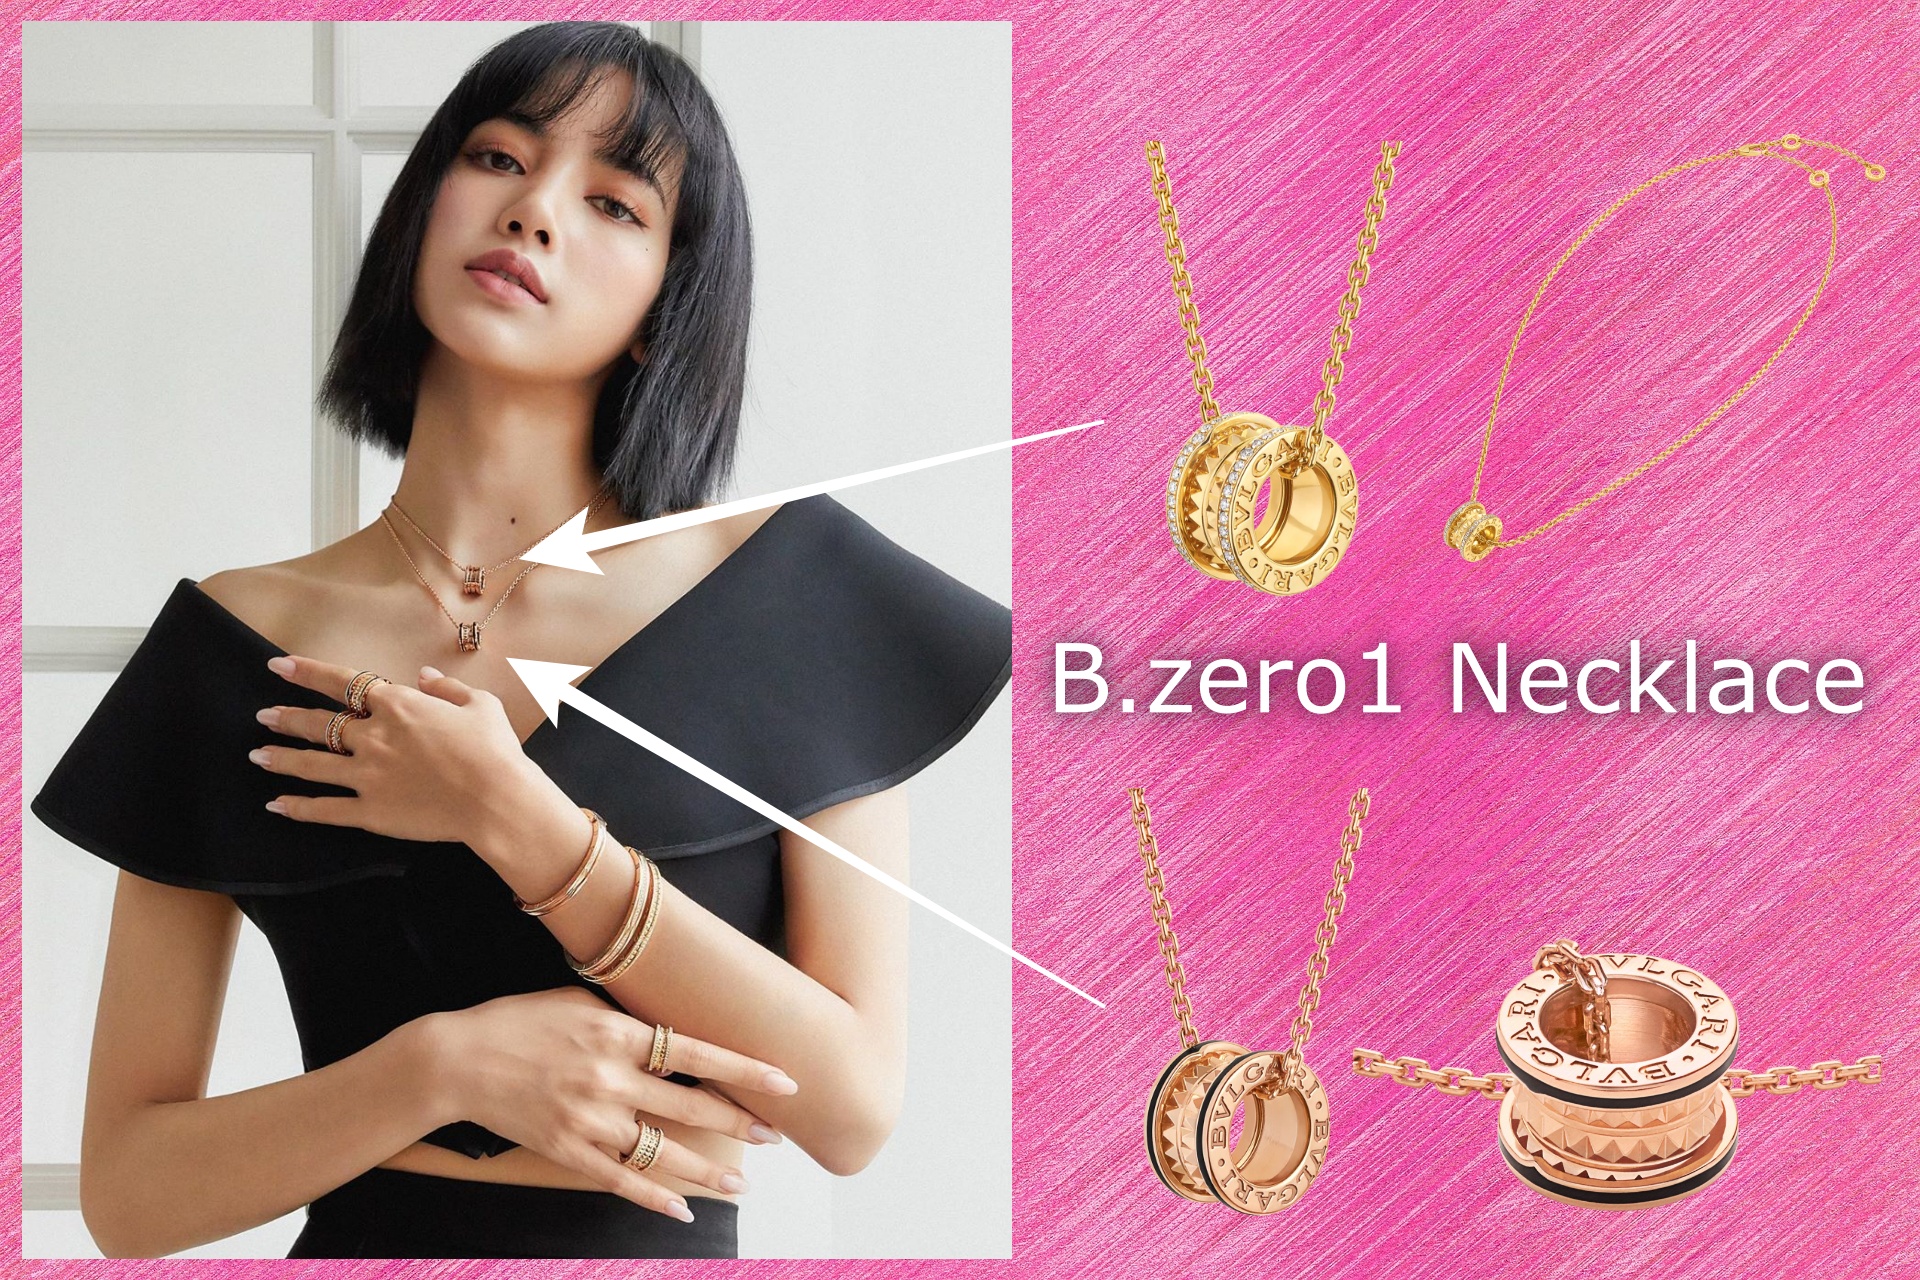 B.zero1 Necklace